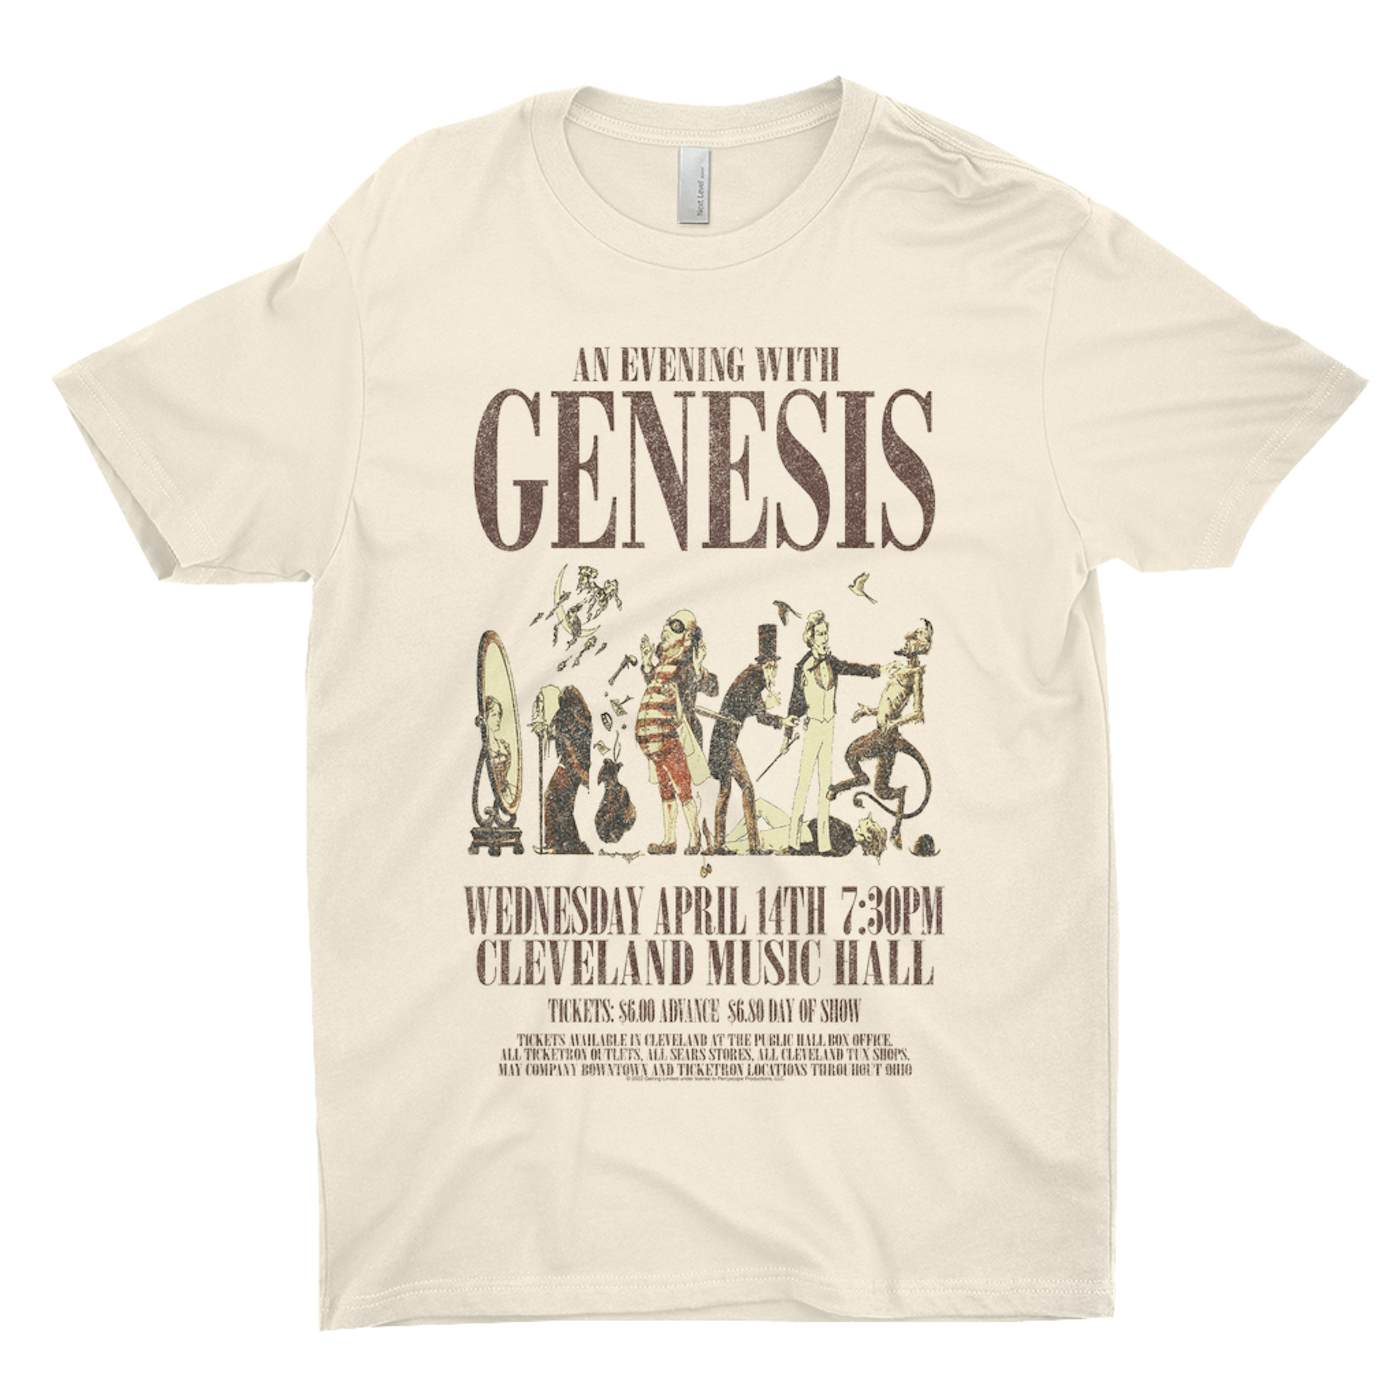 Genesis T-Shirt | Cleveland Music Hall Concert Genesis Shirt